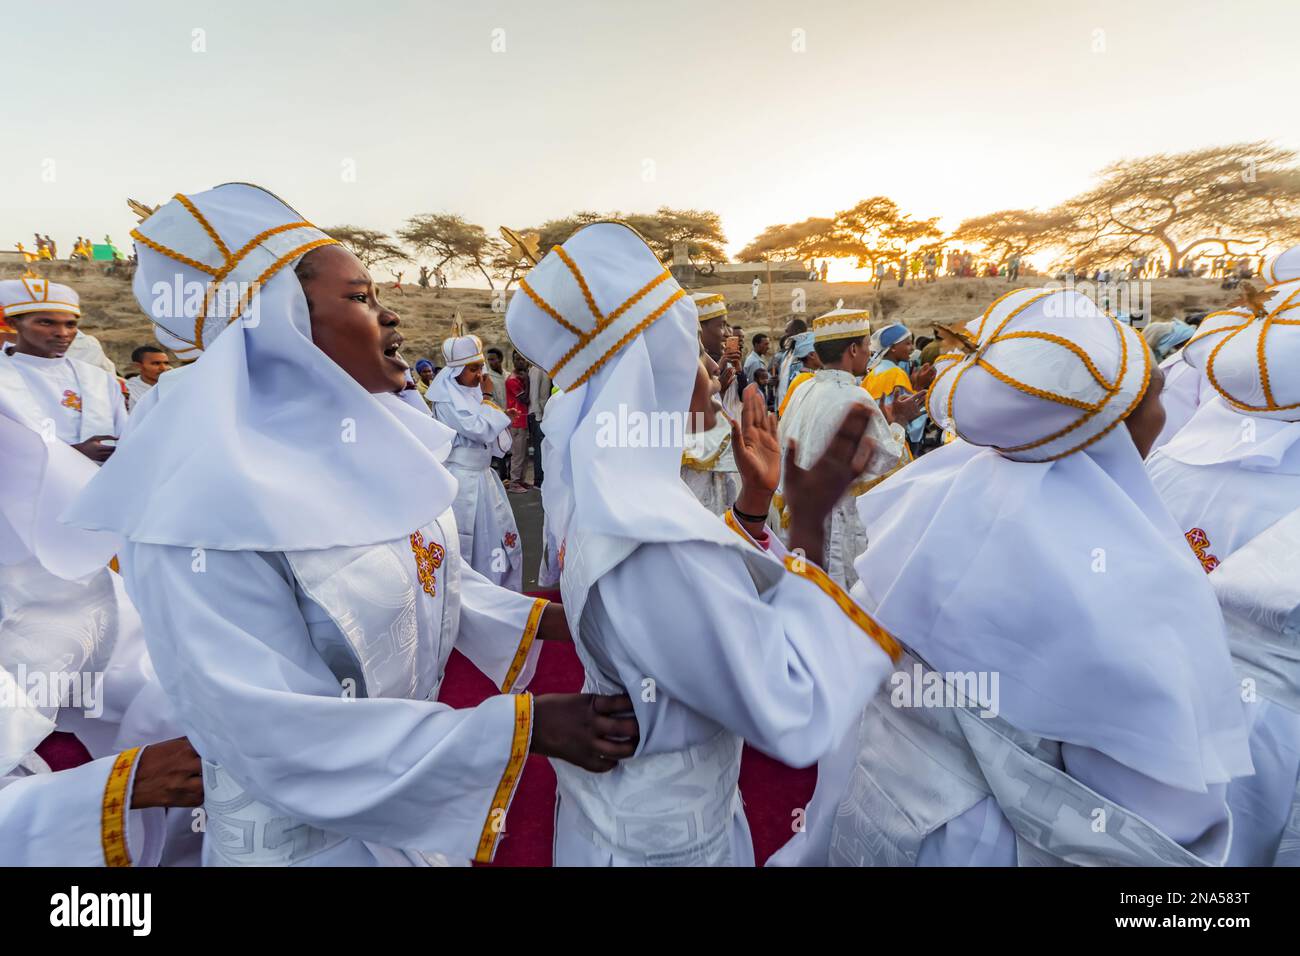 Persone in una processione Timkat durante la celebrazione ortodossa Tewahedo dell'Epifania, celebrata il 19 gennaio; Bulbula, Oromia, Etiopia Foto Stock